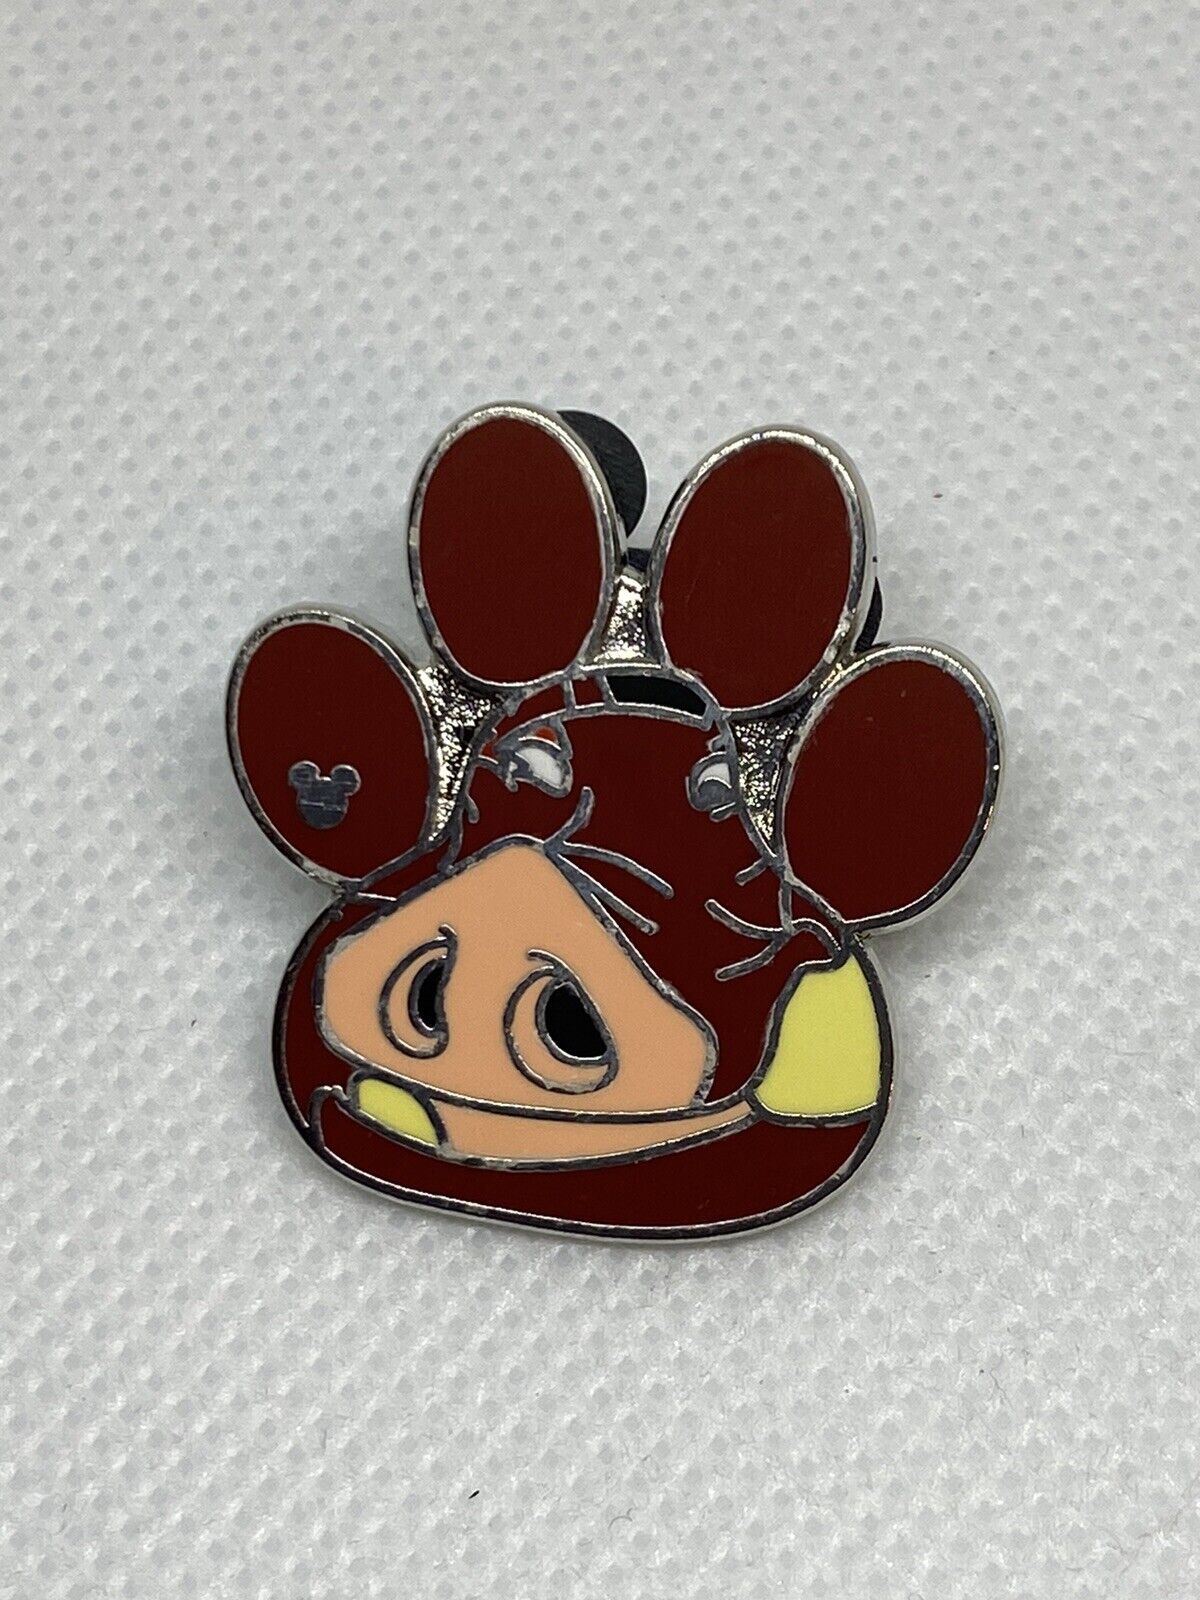 Disney Trading Pin - Lion King Pumba Pawprint 